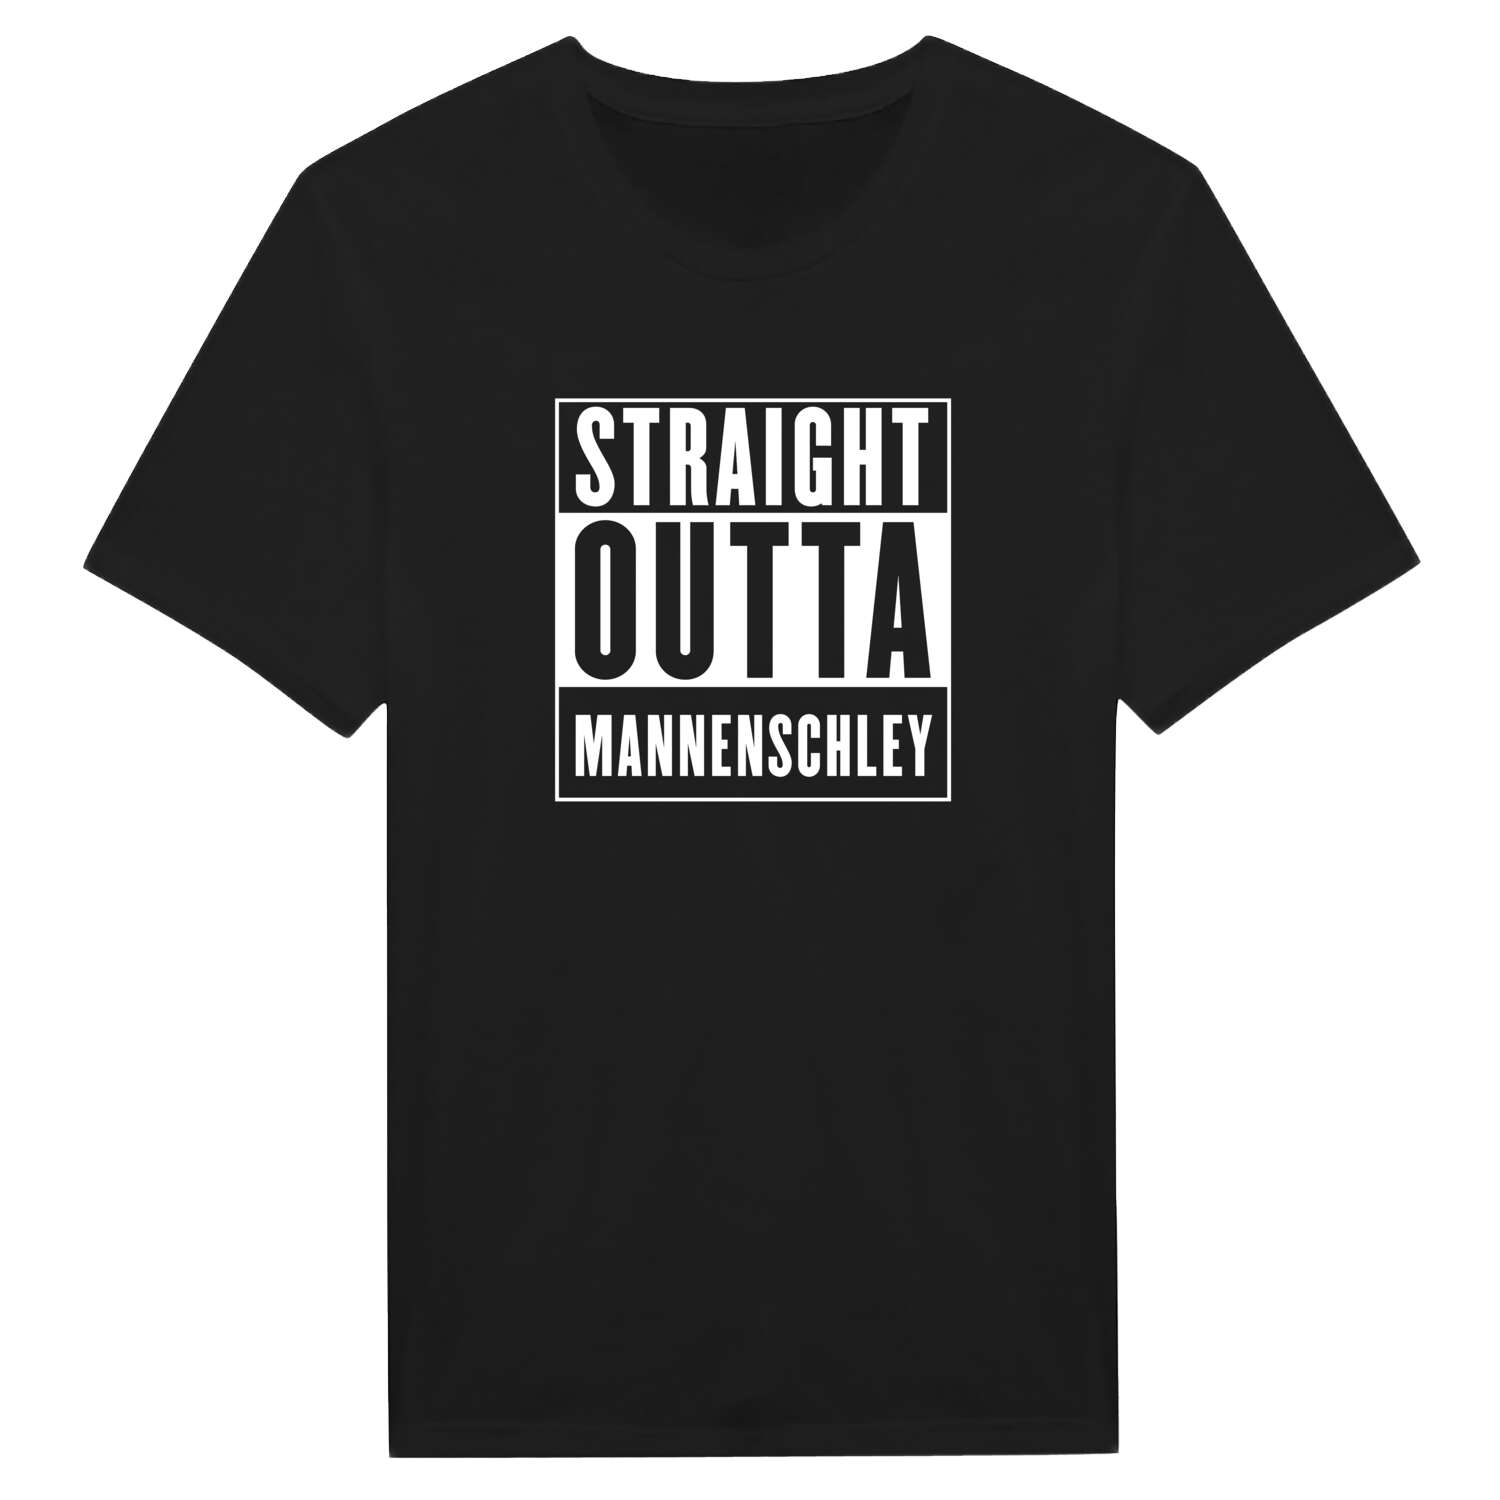 Mannenschley T-Shirt »Straight Outta«